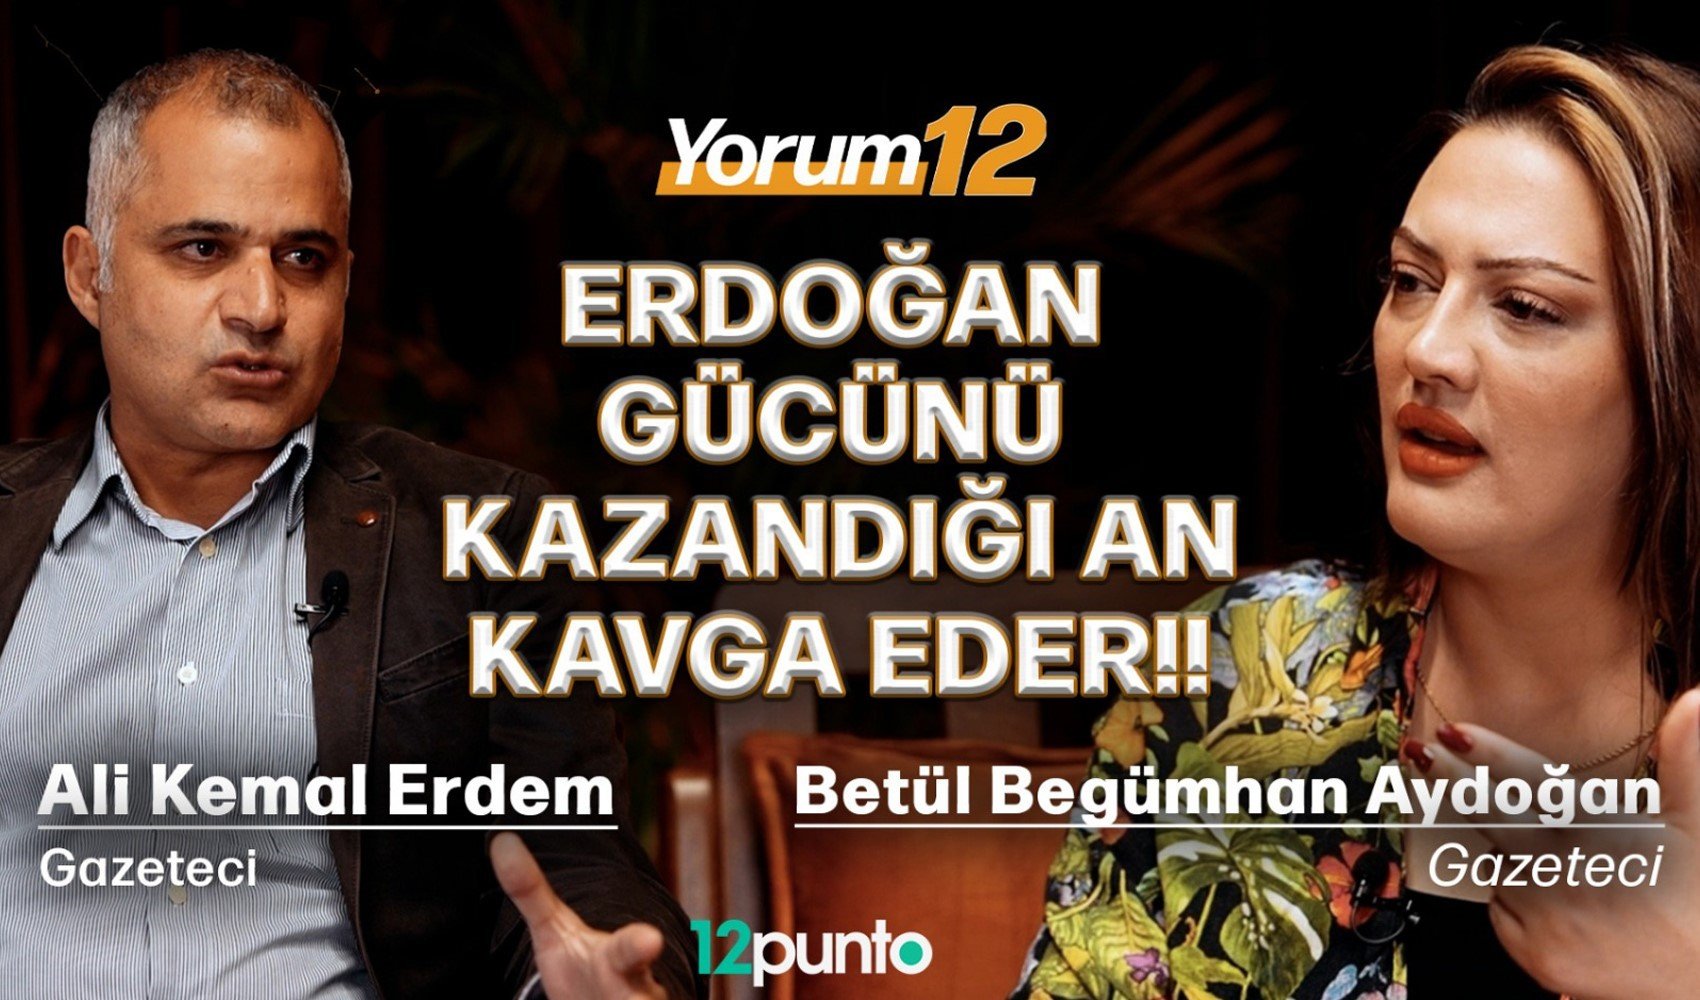 Gazeteci Ali Kemal Erdem 12punto stüdyosunda Yorum12'nin konuğu oldu: CHP lideri Özel nasıl bir siyaset izliyor?